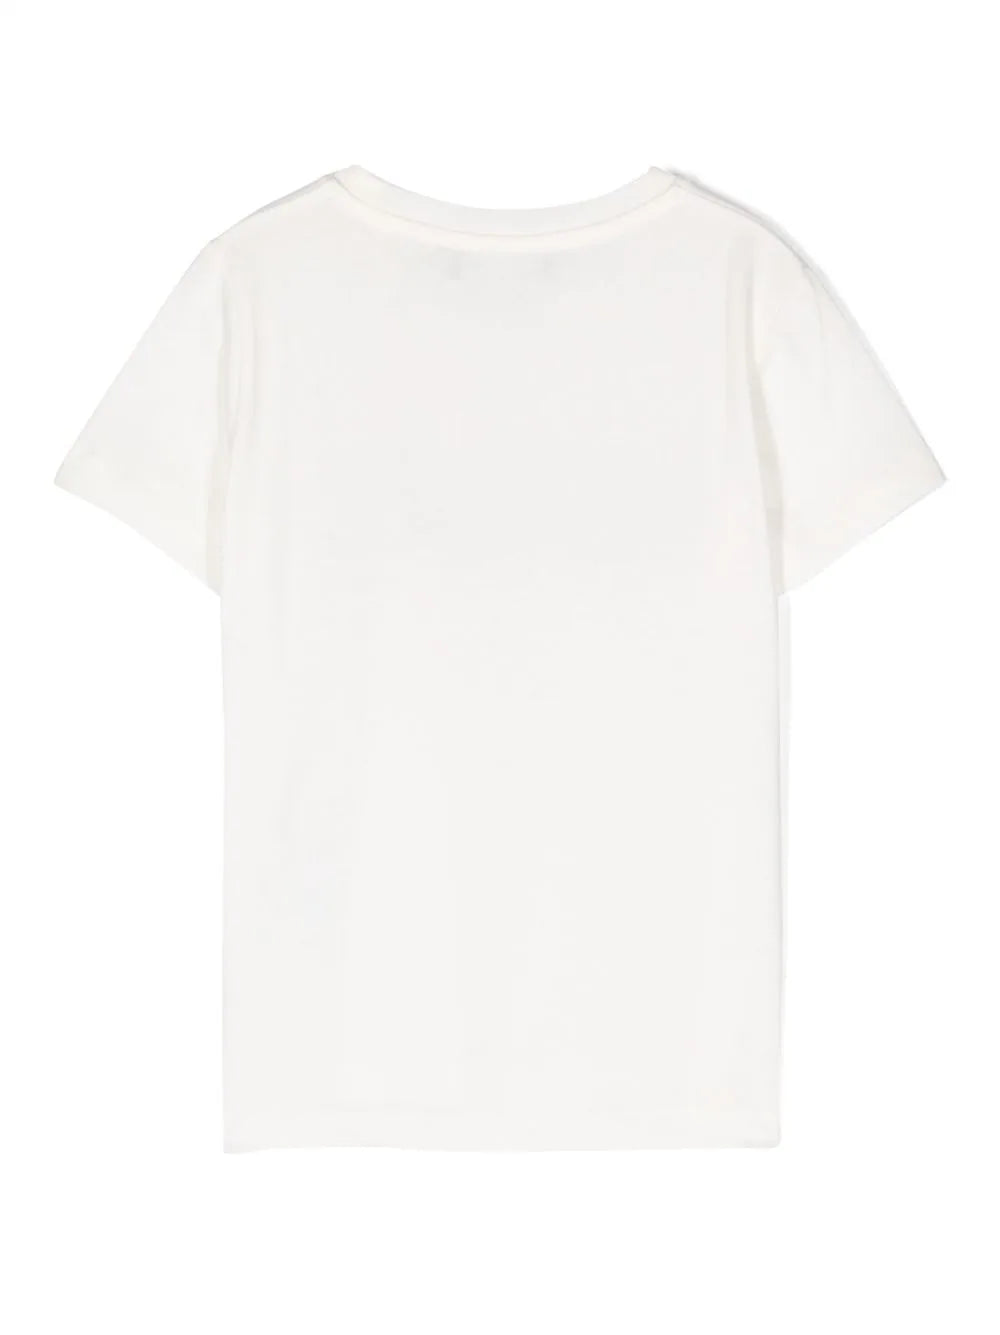 VERSACE KIDS Logo Stars Print T-Shirt White - MAISONDEFASHION.COM